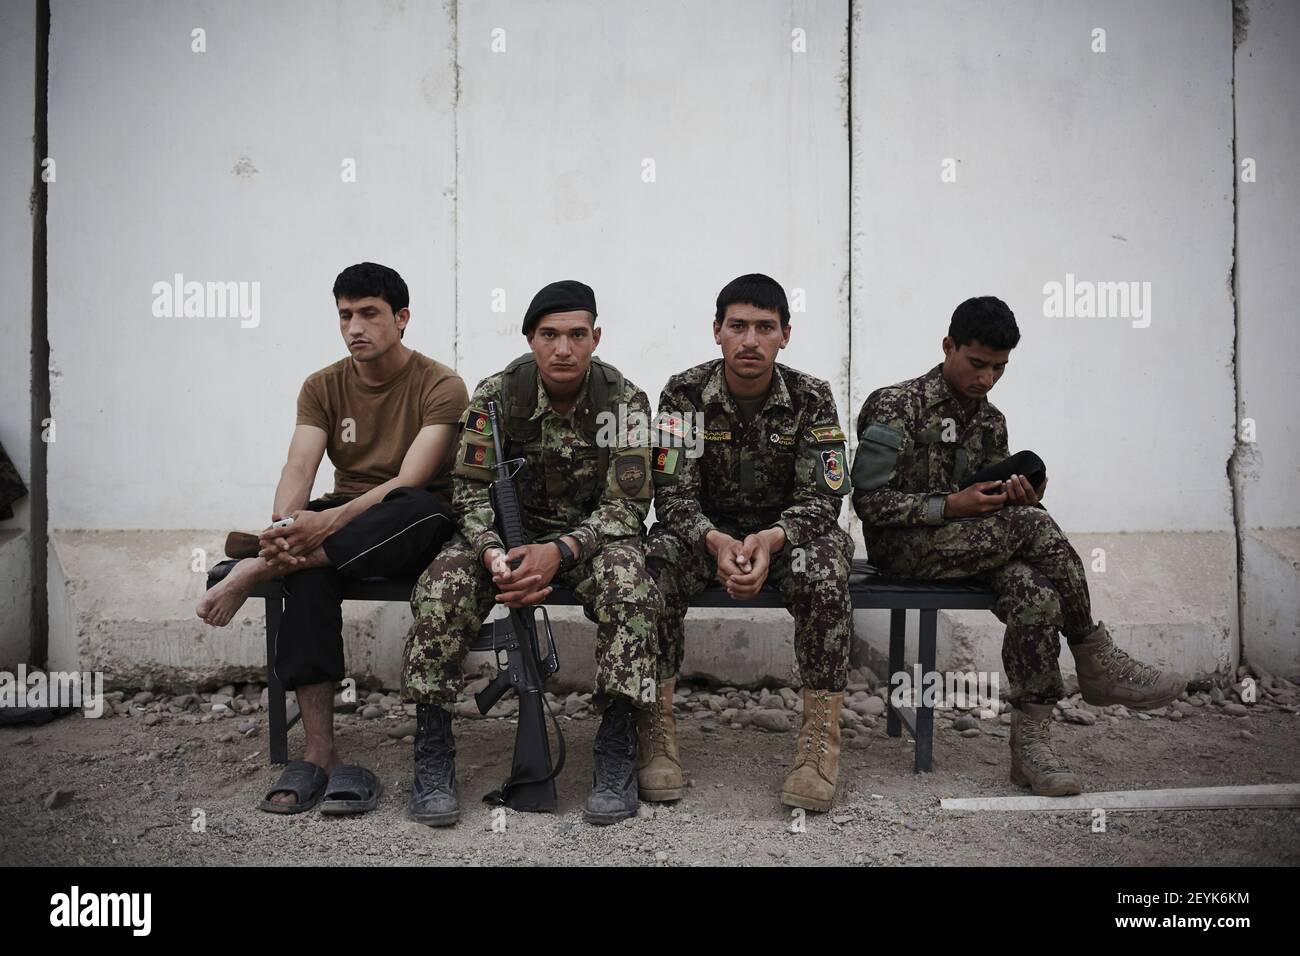 ***el galardonado fotógrafo de Sipa Sebastiano Tomada pasó varias semanas dentro del Ejército Nacional afgano - viajando al puesto de avanzada de combate en la provincia de Laghman, viviendo con las tropas y presenciando el inicio de la temporada de combate 2013***Afganistán ha visto un comienzo muy activo de su temporada de combate en 2013. Las Fuerzas de Seguridad Nacional afganas, en particular la ANA (AfghanNationalArmy), han estado en el primer plano de la lucha, mientras que la Fuerza Internacional de asistencia para la Seguridad, encabezada por la OTAN, se ha desacoplado en gran medida y ha pasado a desempeñar un papel de apoyo, asesoramiento y capacitación mientras se prepara para ella Foto de stock